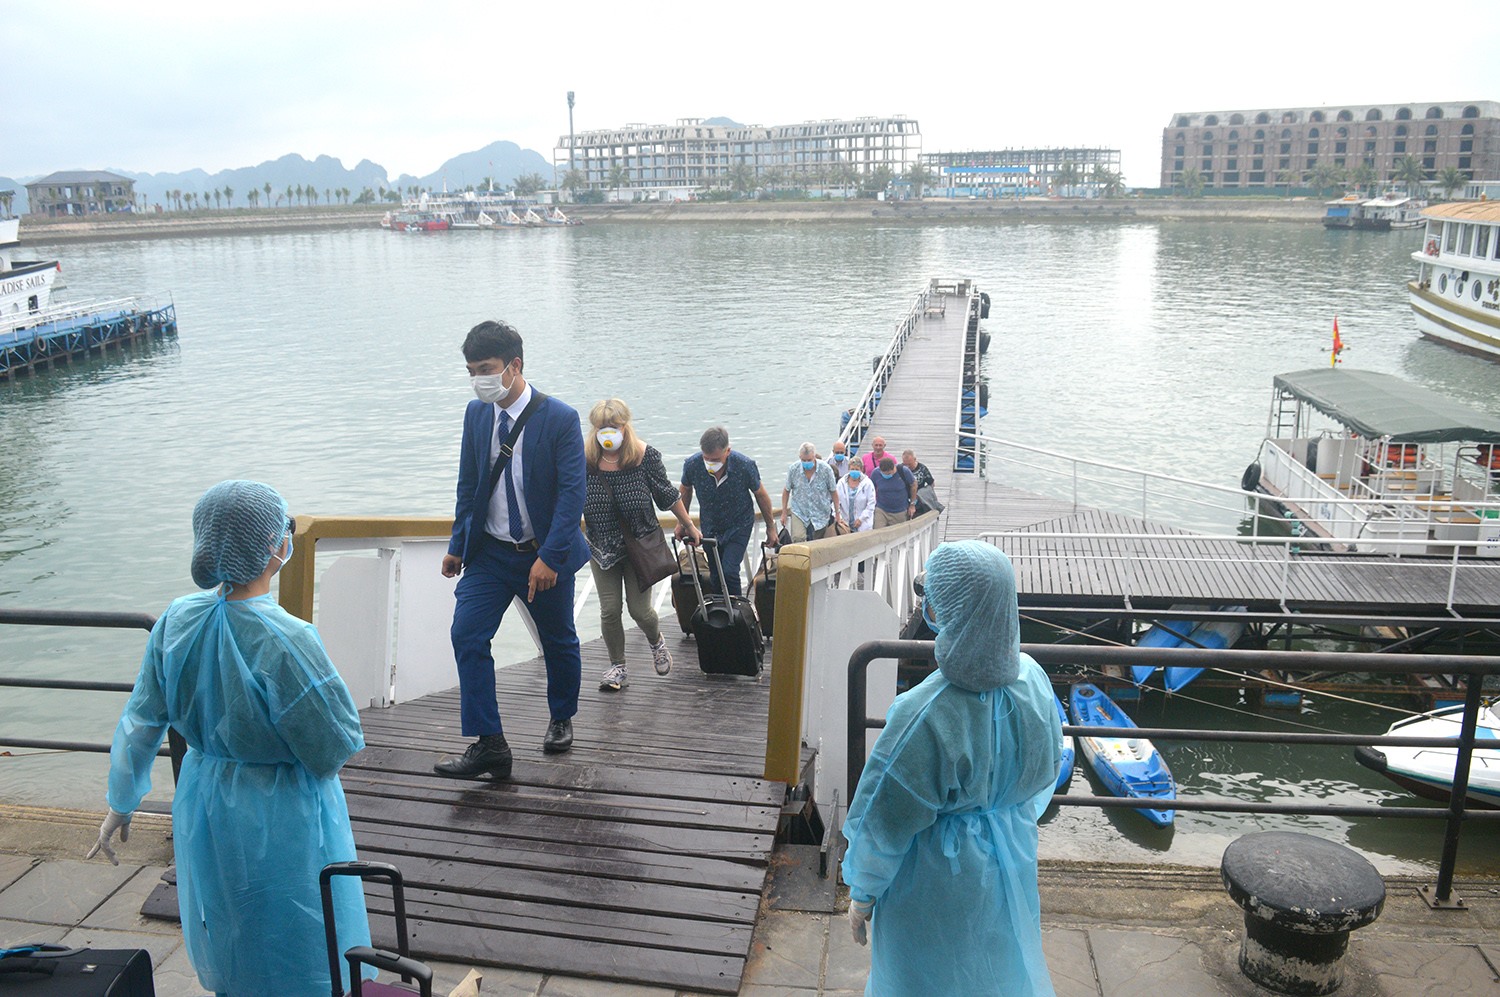 Hành khách trên tàu nghỉ đêm cập cảng Tuần Châu được nhân viên y tế Quảng Ninh hưỡng dẫn đưa đi cách ly. Ảnh: BQN